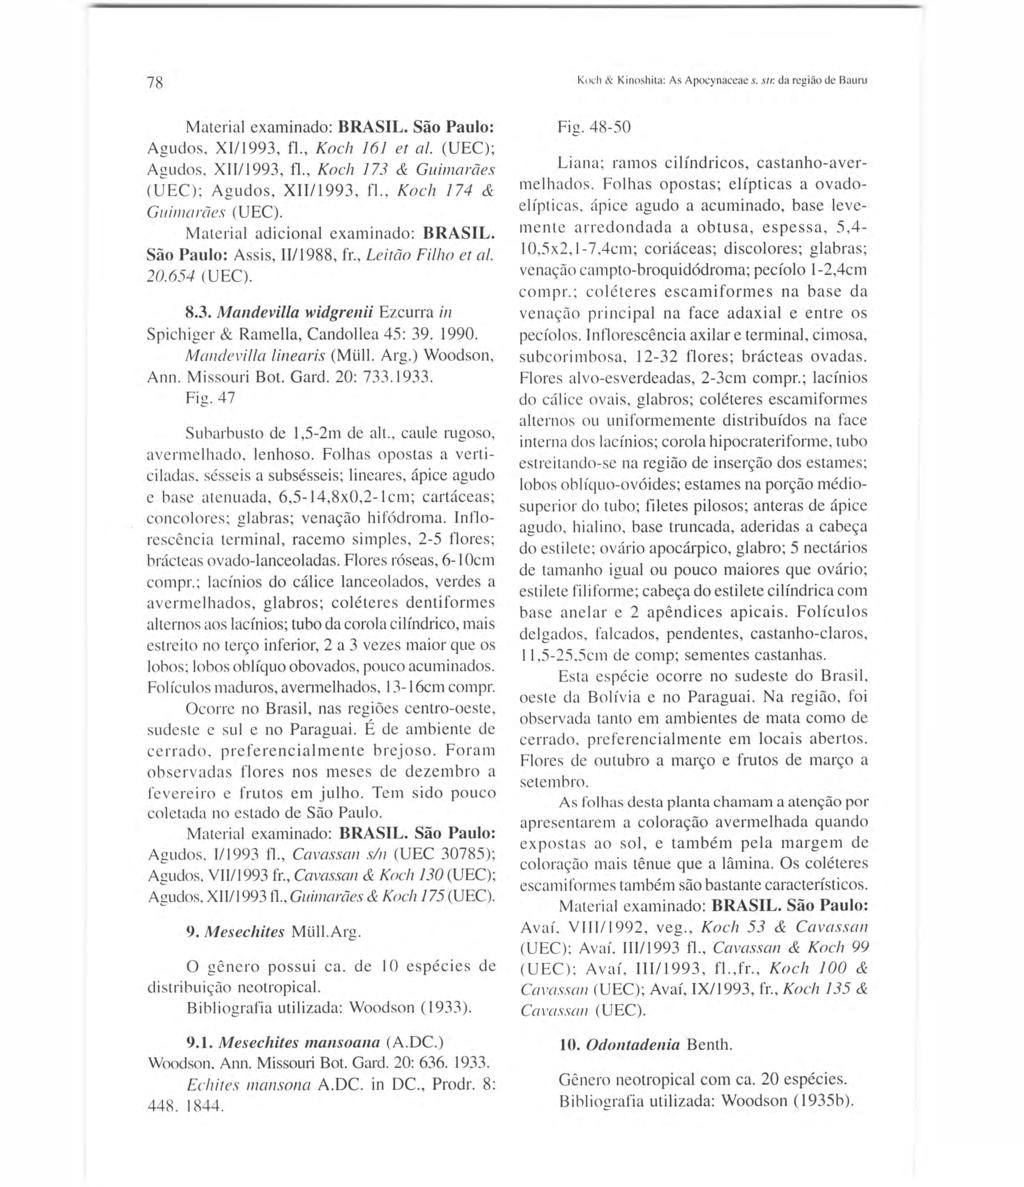 78 Agudos. X111993, fi., Koch 16/ et ai. (UEC); Agudos, XII11993, fi., Koch 173 & Guimarães (UEC); Agudos, XII/1993, fi., Koch 174 & GlIill/arães (UEC). Material adicional examinado: BRASIL.